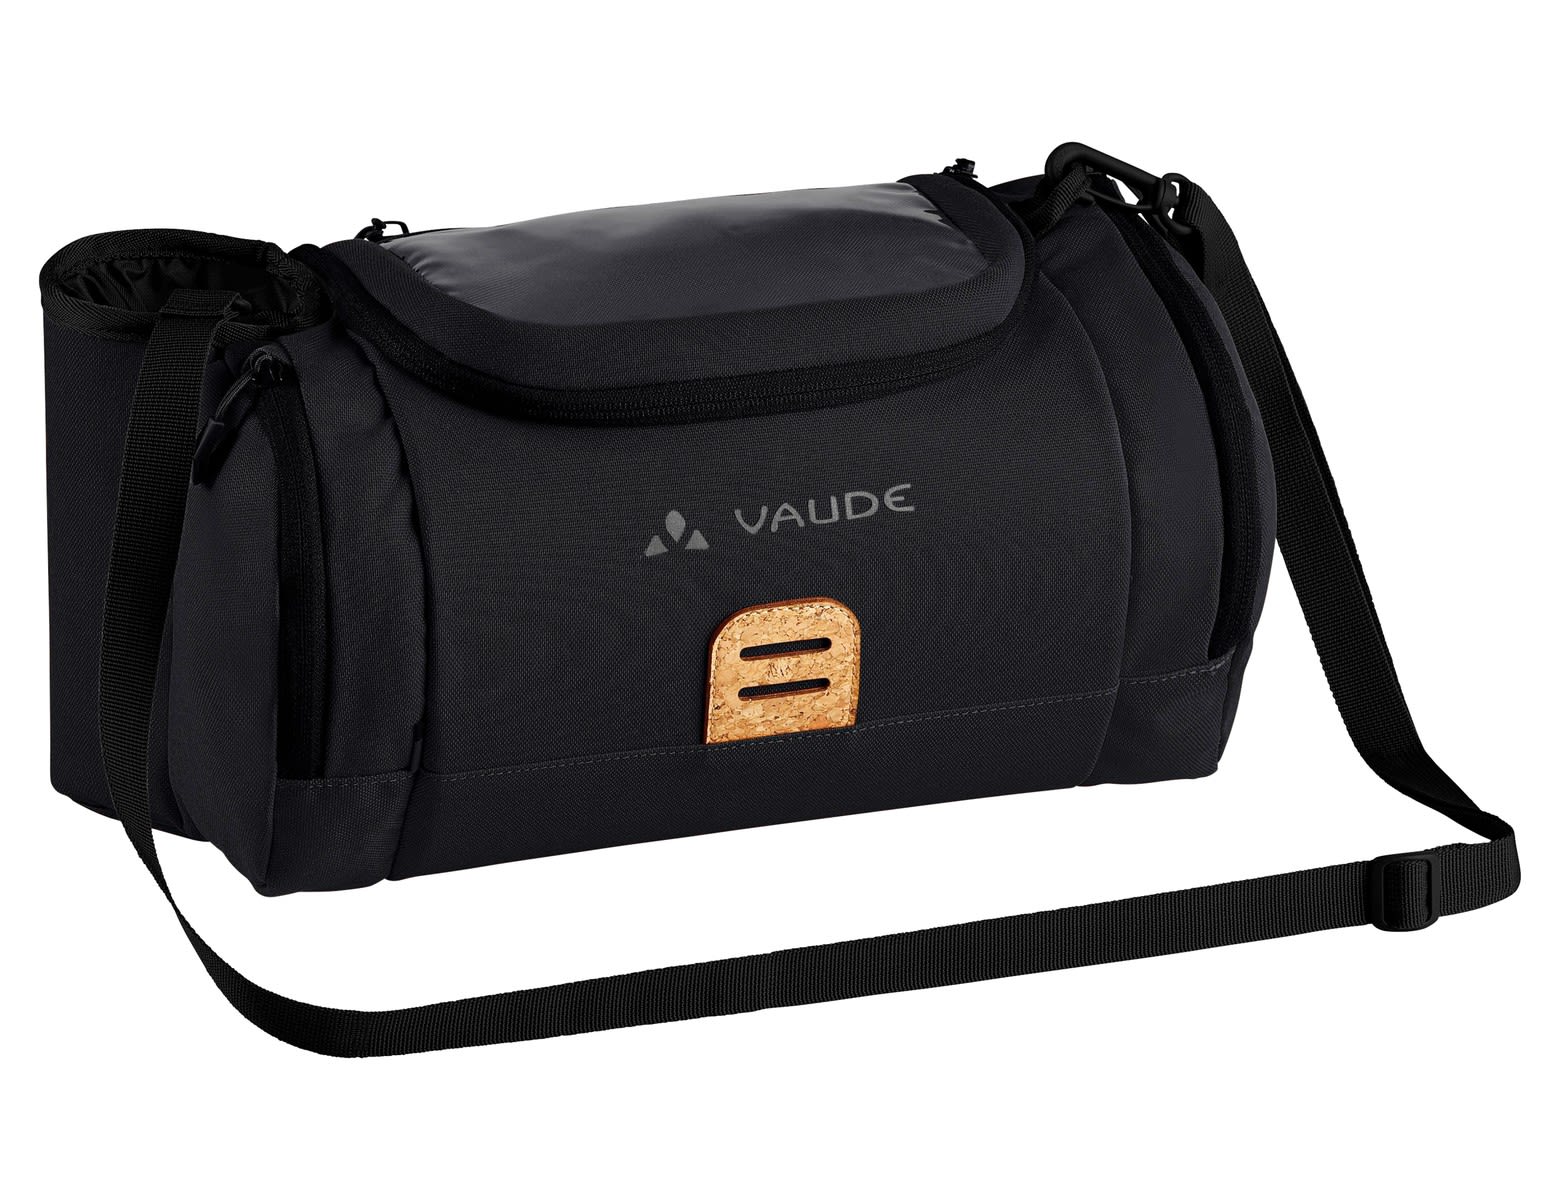 Vaude Ebox Schwarz- Taschen- Grsse 9l - Farbe Black